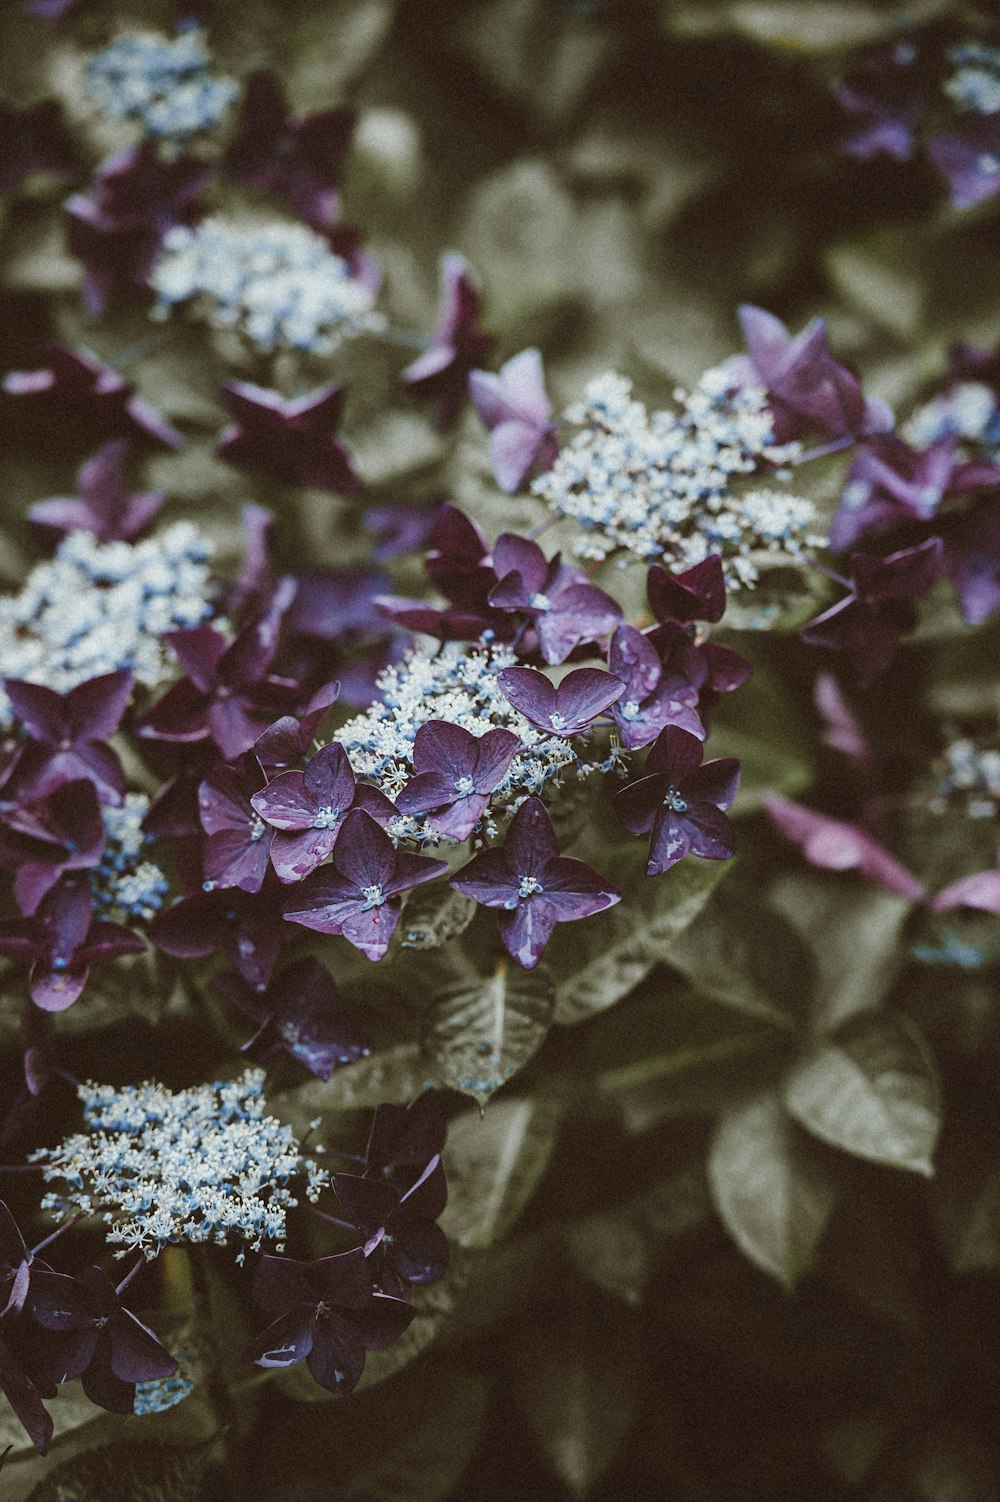 tilt shift photography of purple flower